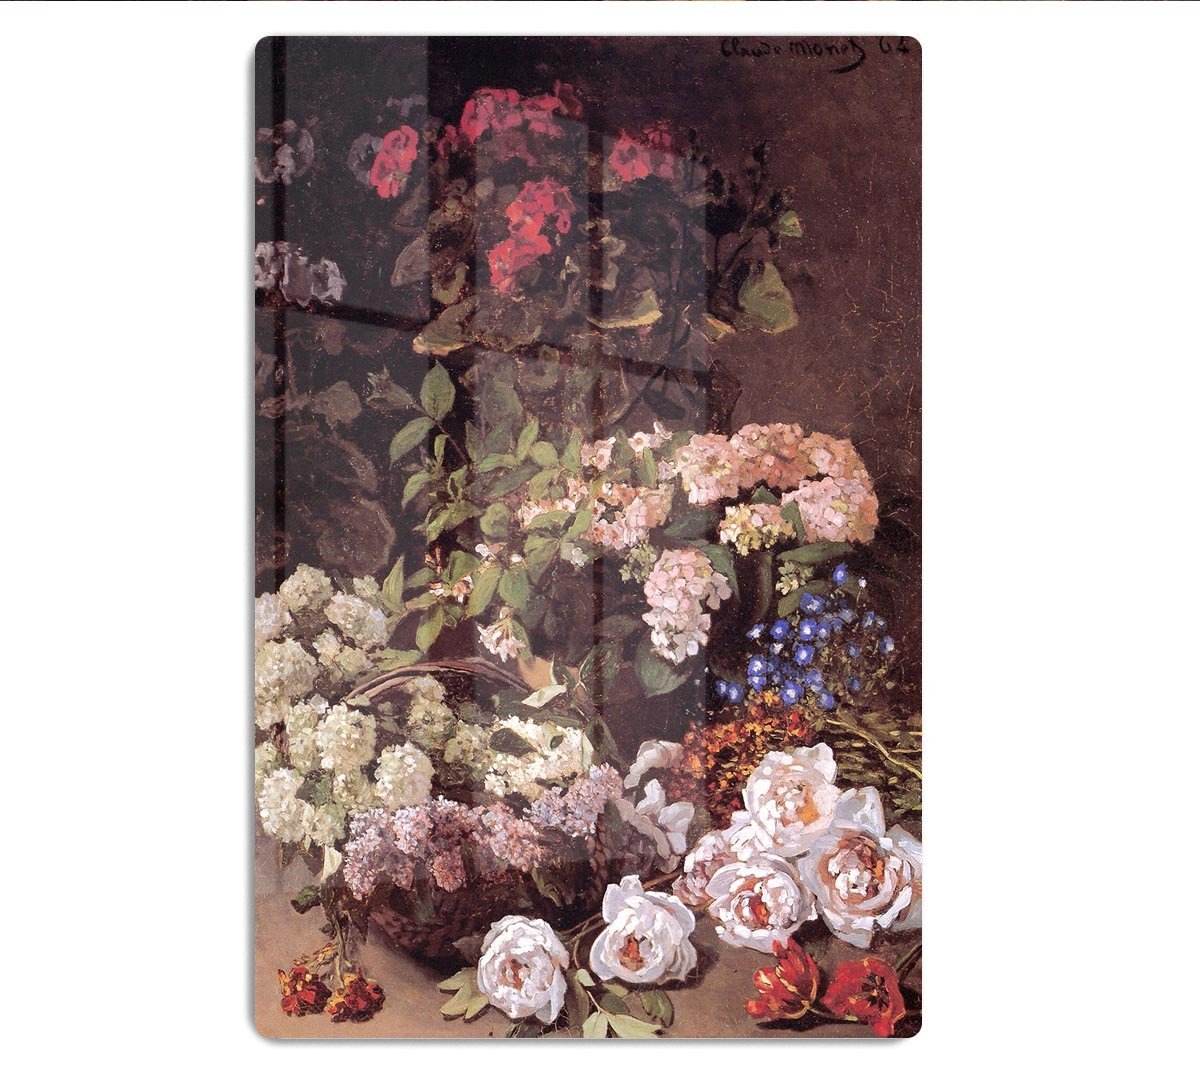 Spring Flowers by Monet HD Metal Print